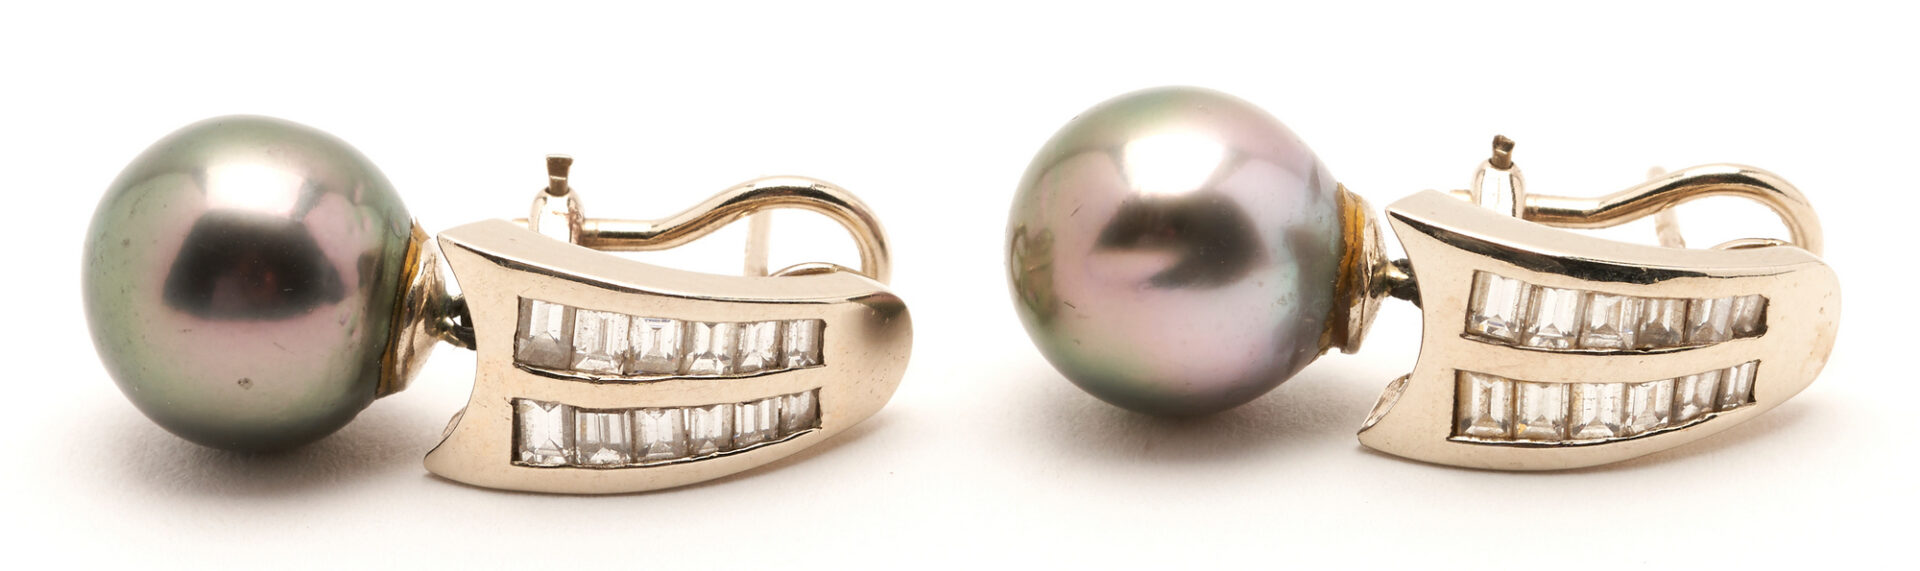 Lot 822: 2 Pairs Ladies Gold & Gemstone Earrings, incl. Pearls